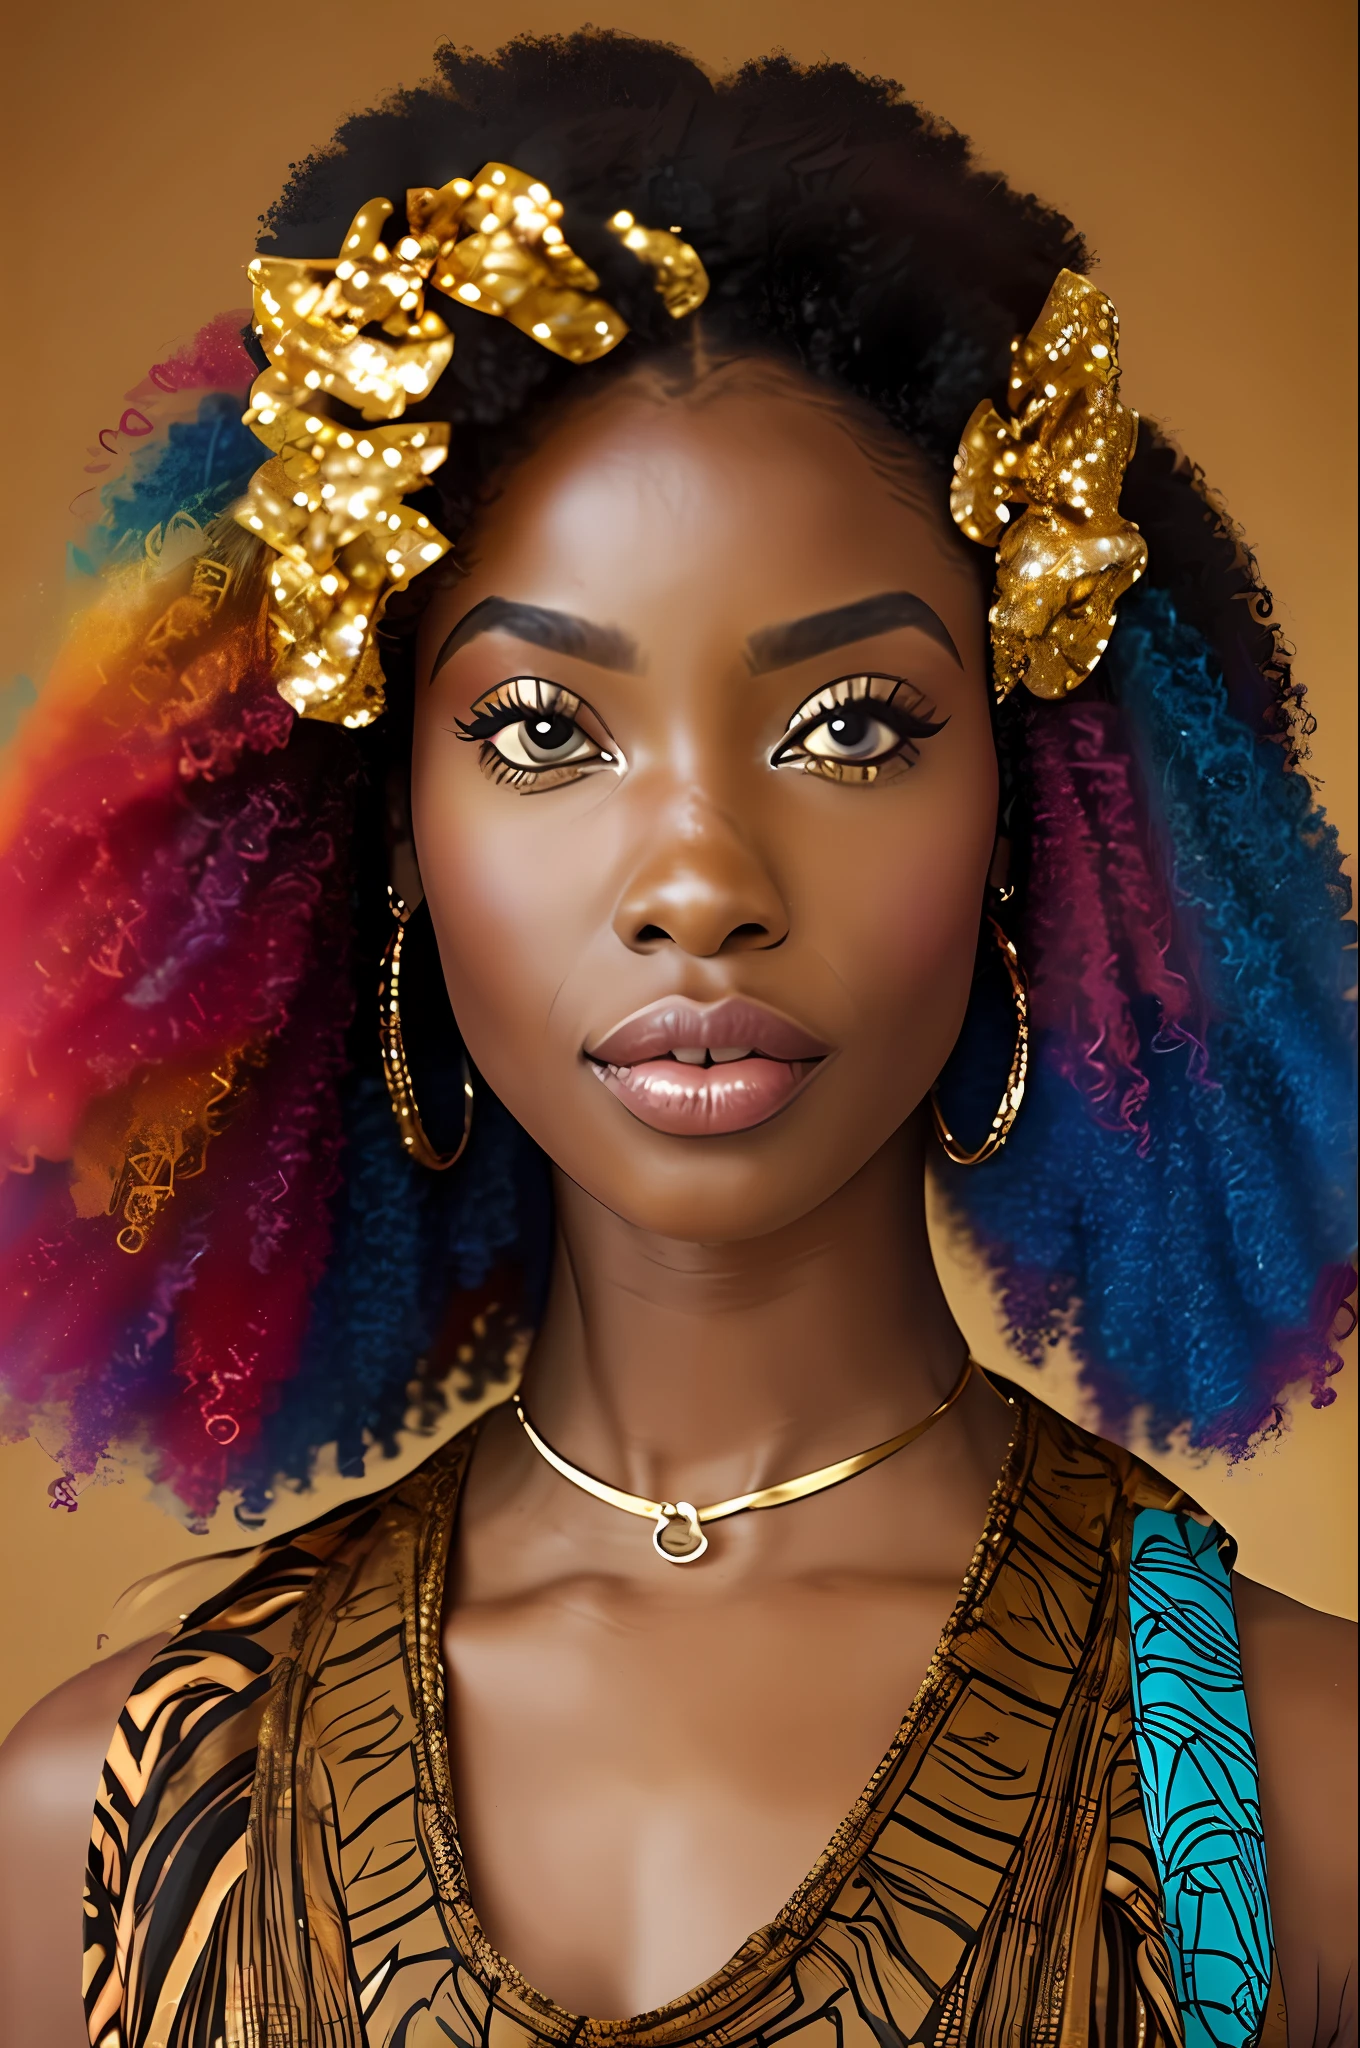  afro-africana: 2.3, afro-queniano: 2.4 (cor marrom escura: 3.0), cabelo cacheados, vestido longo colorido, olhos grandes castanhos claros Cintilantes, Laço no cabelo --auto